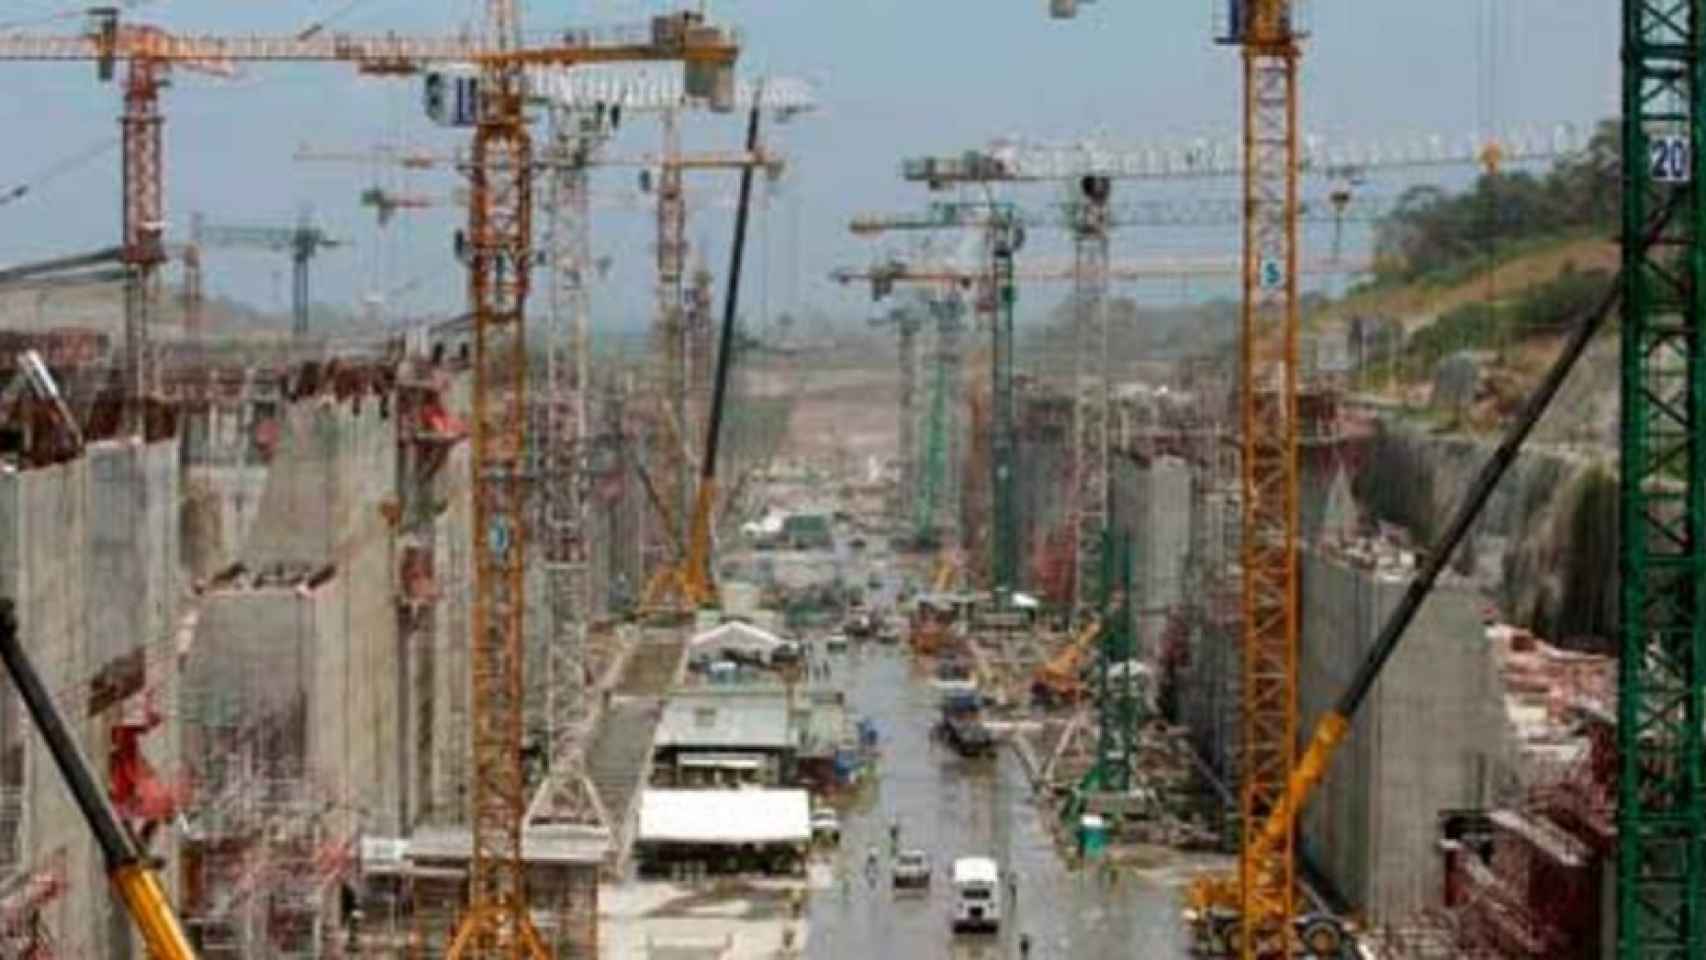 Sacyr eleva a arbitraje de la ONU el conflicto por obras del canal de Panamá